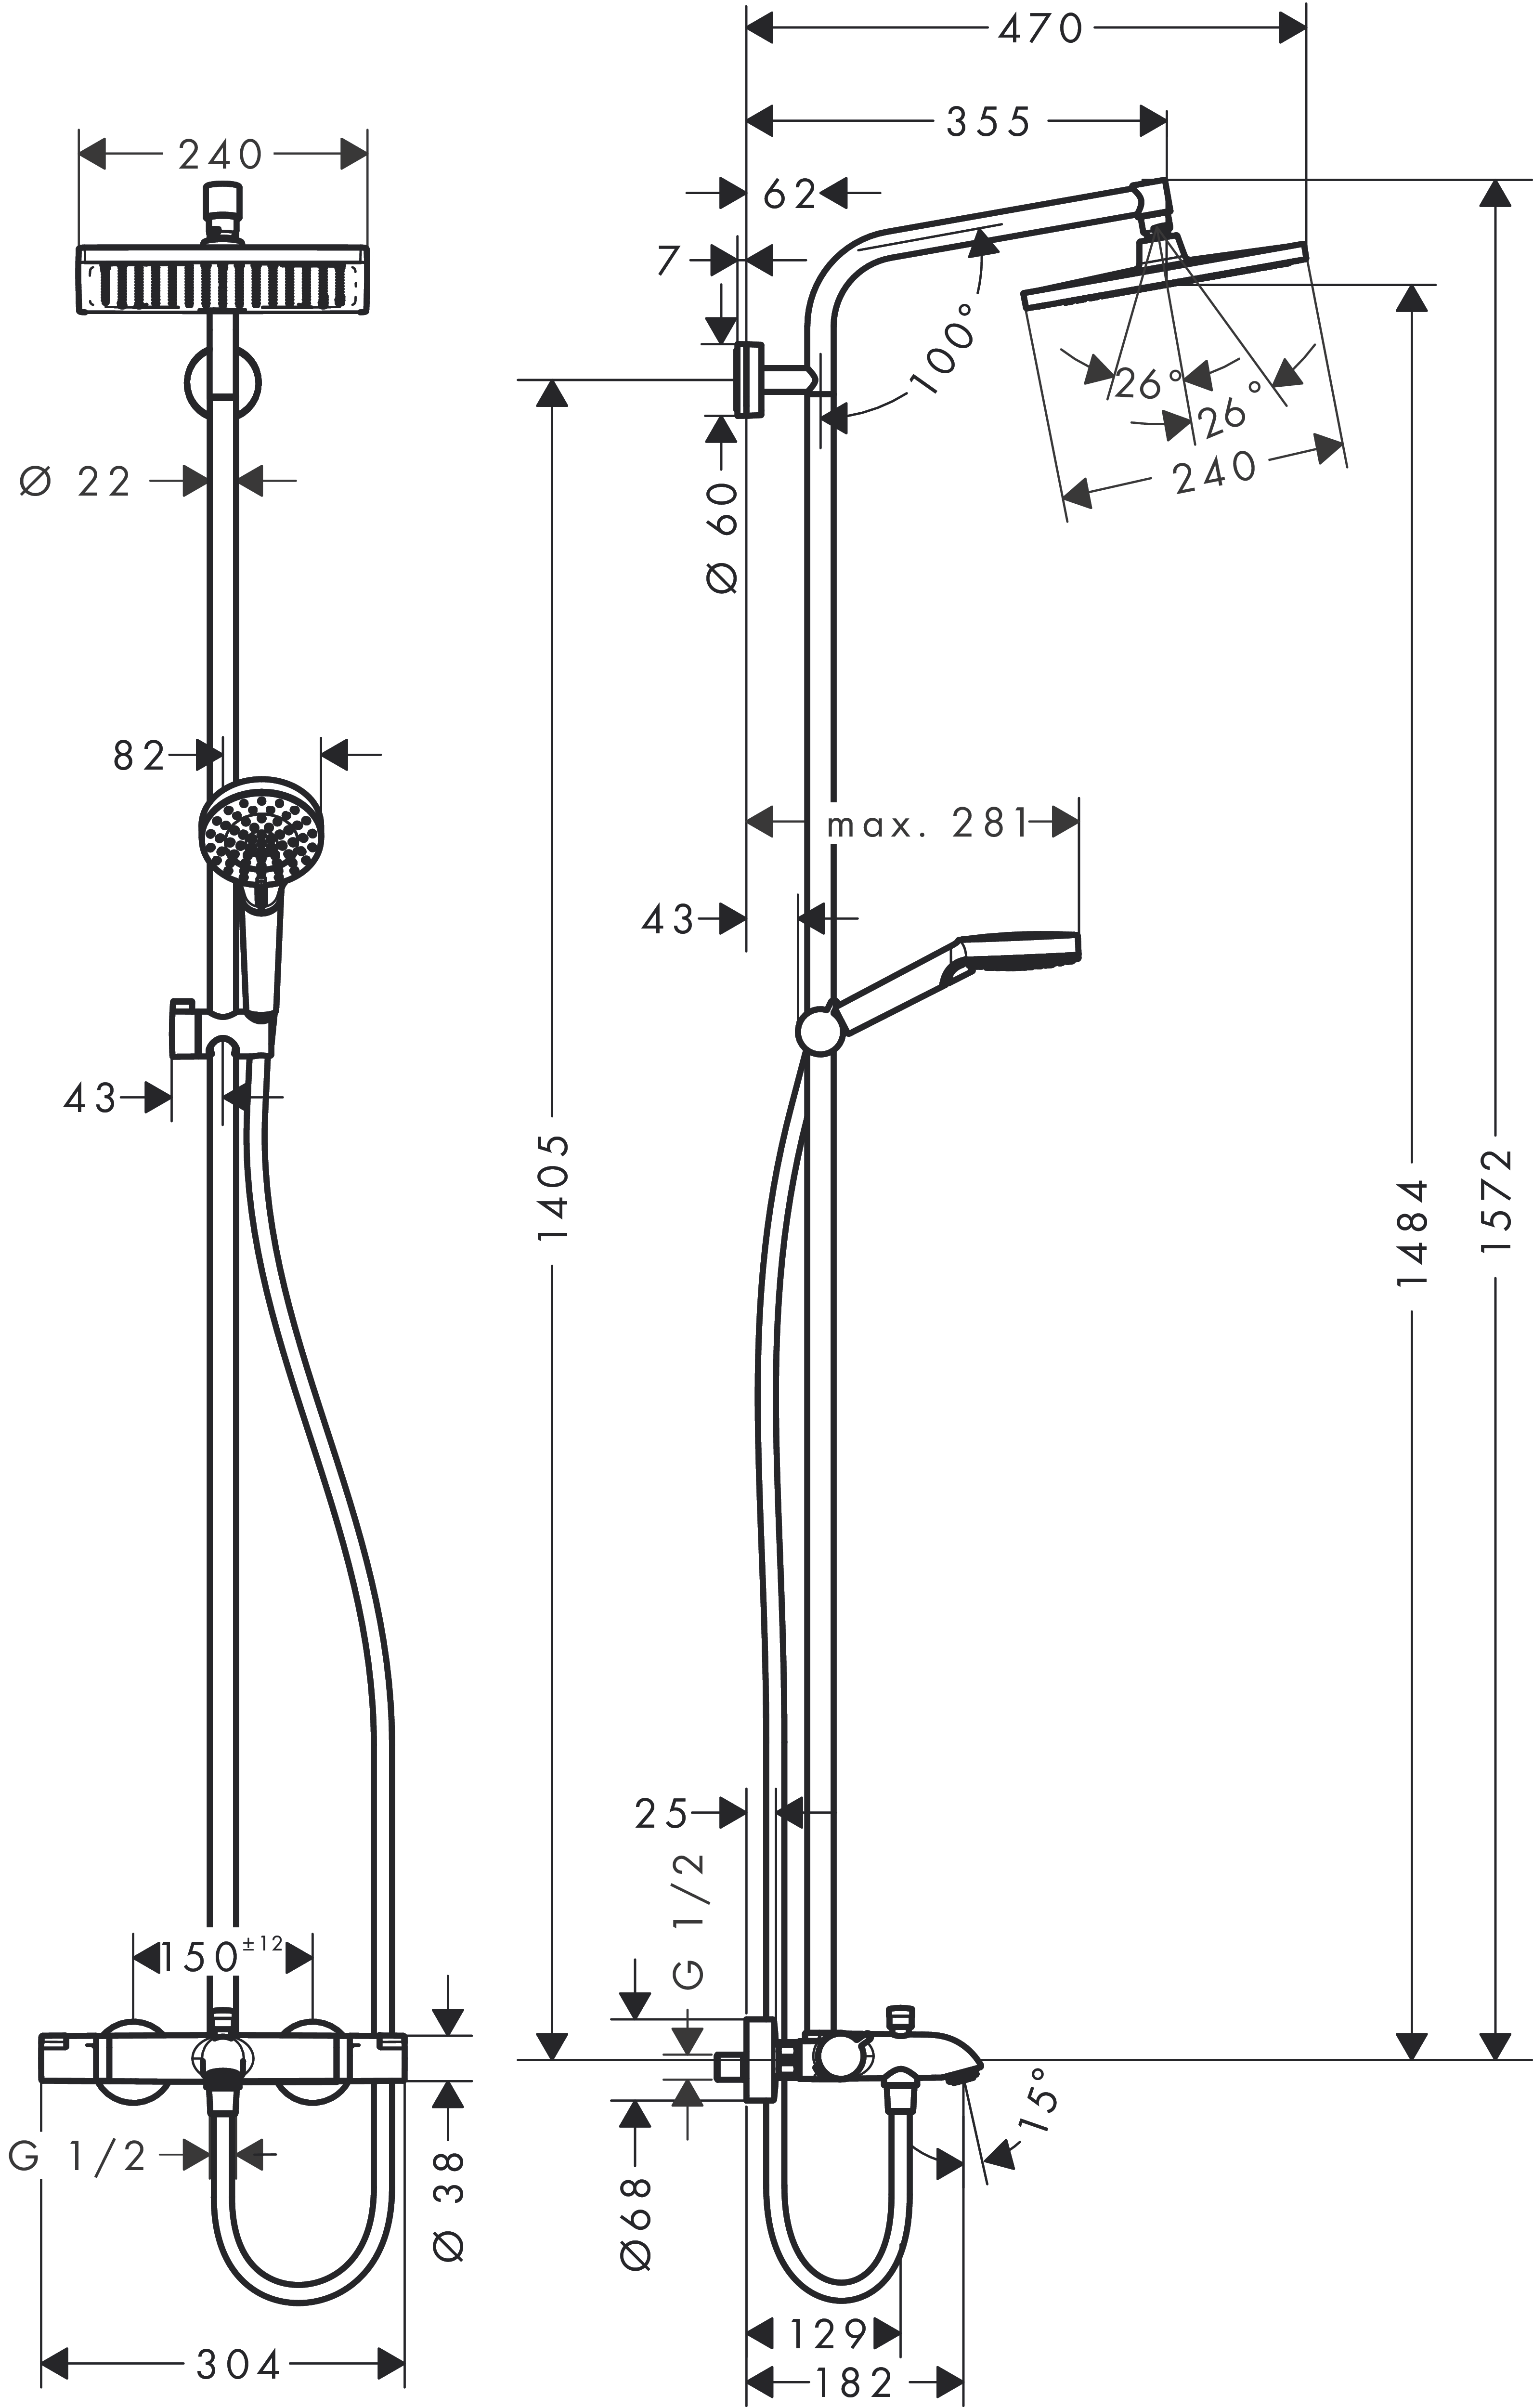 Showerpipe Crometta E 240 für Wanne chrom mit Thermostat